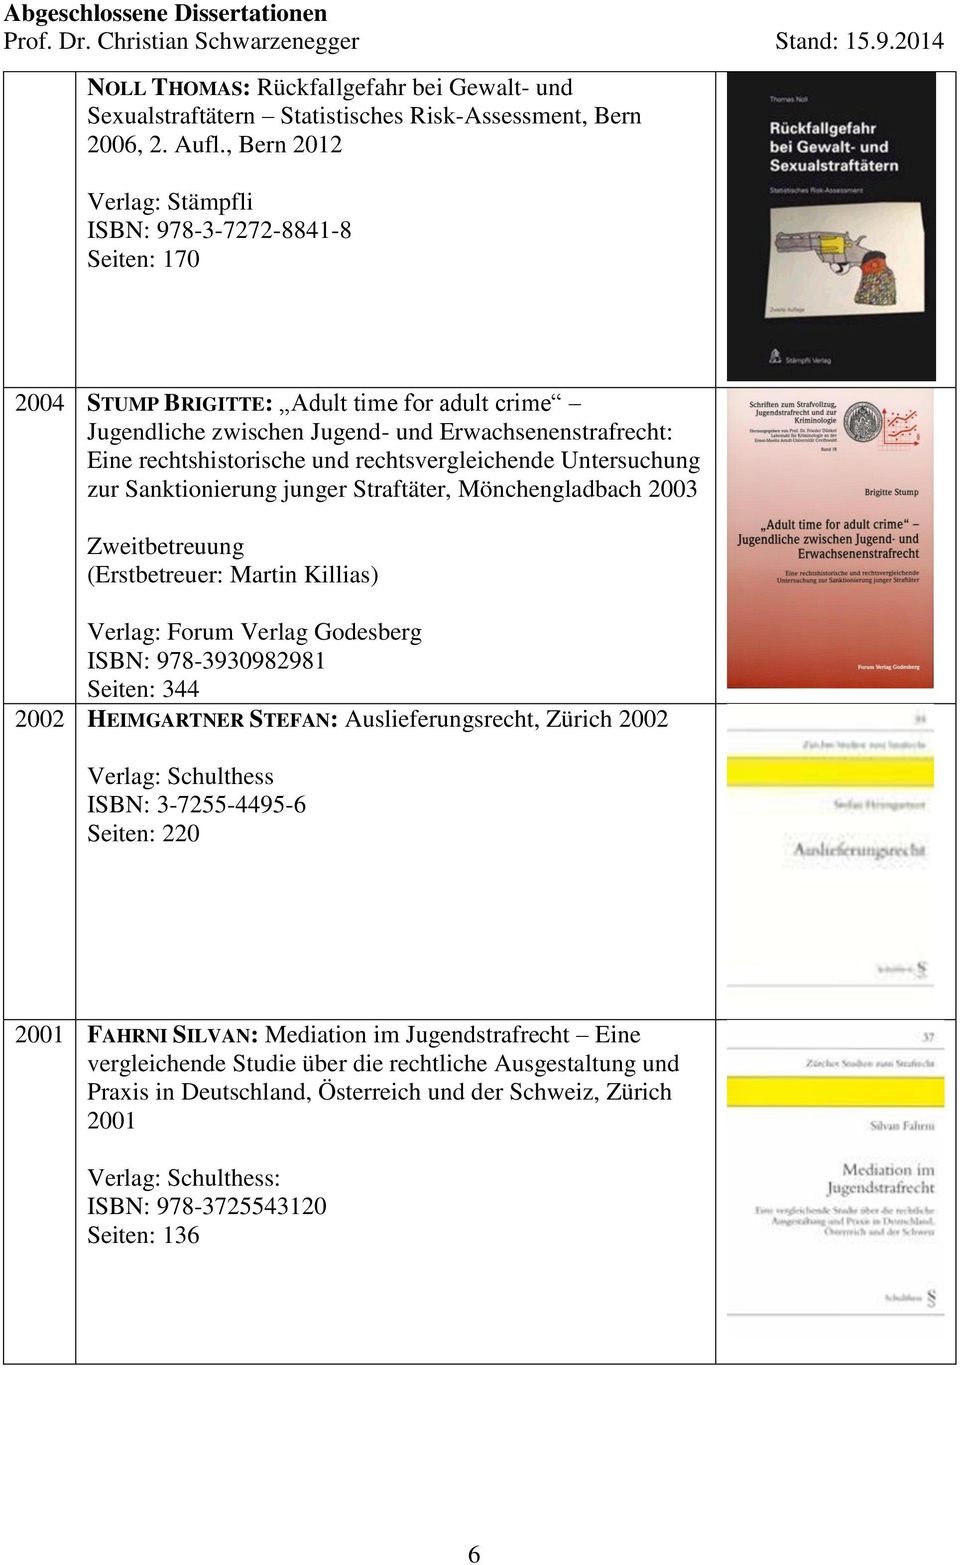 rechtsvergleichende Untersuchung zur Sanktionierung junger Straftäter, Mönchengladbach 2003 (Erstbetreuer: Martin Killias) Verlag: Forum Verlag Godesberg ISBN: 978-3930982981 Seiten: 344 2002